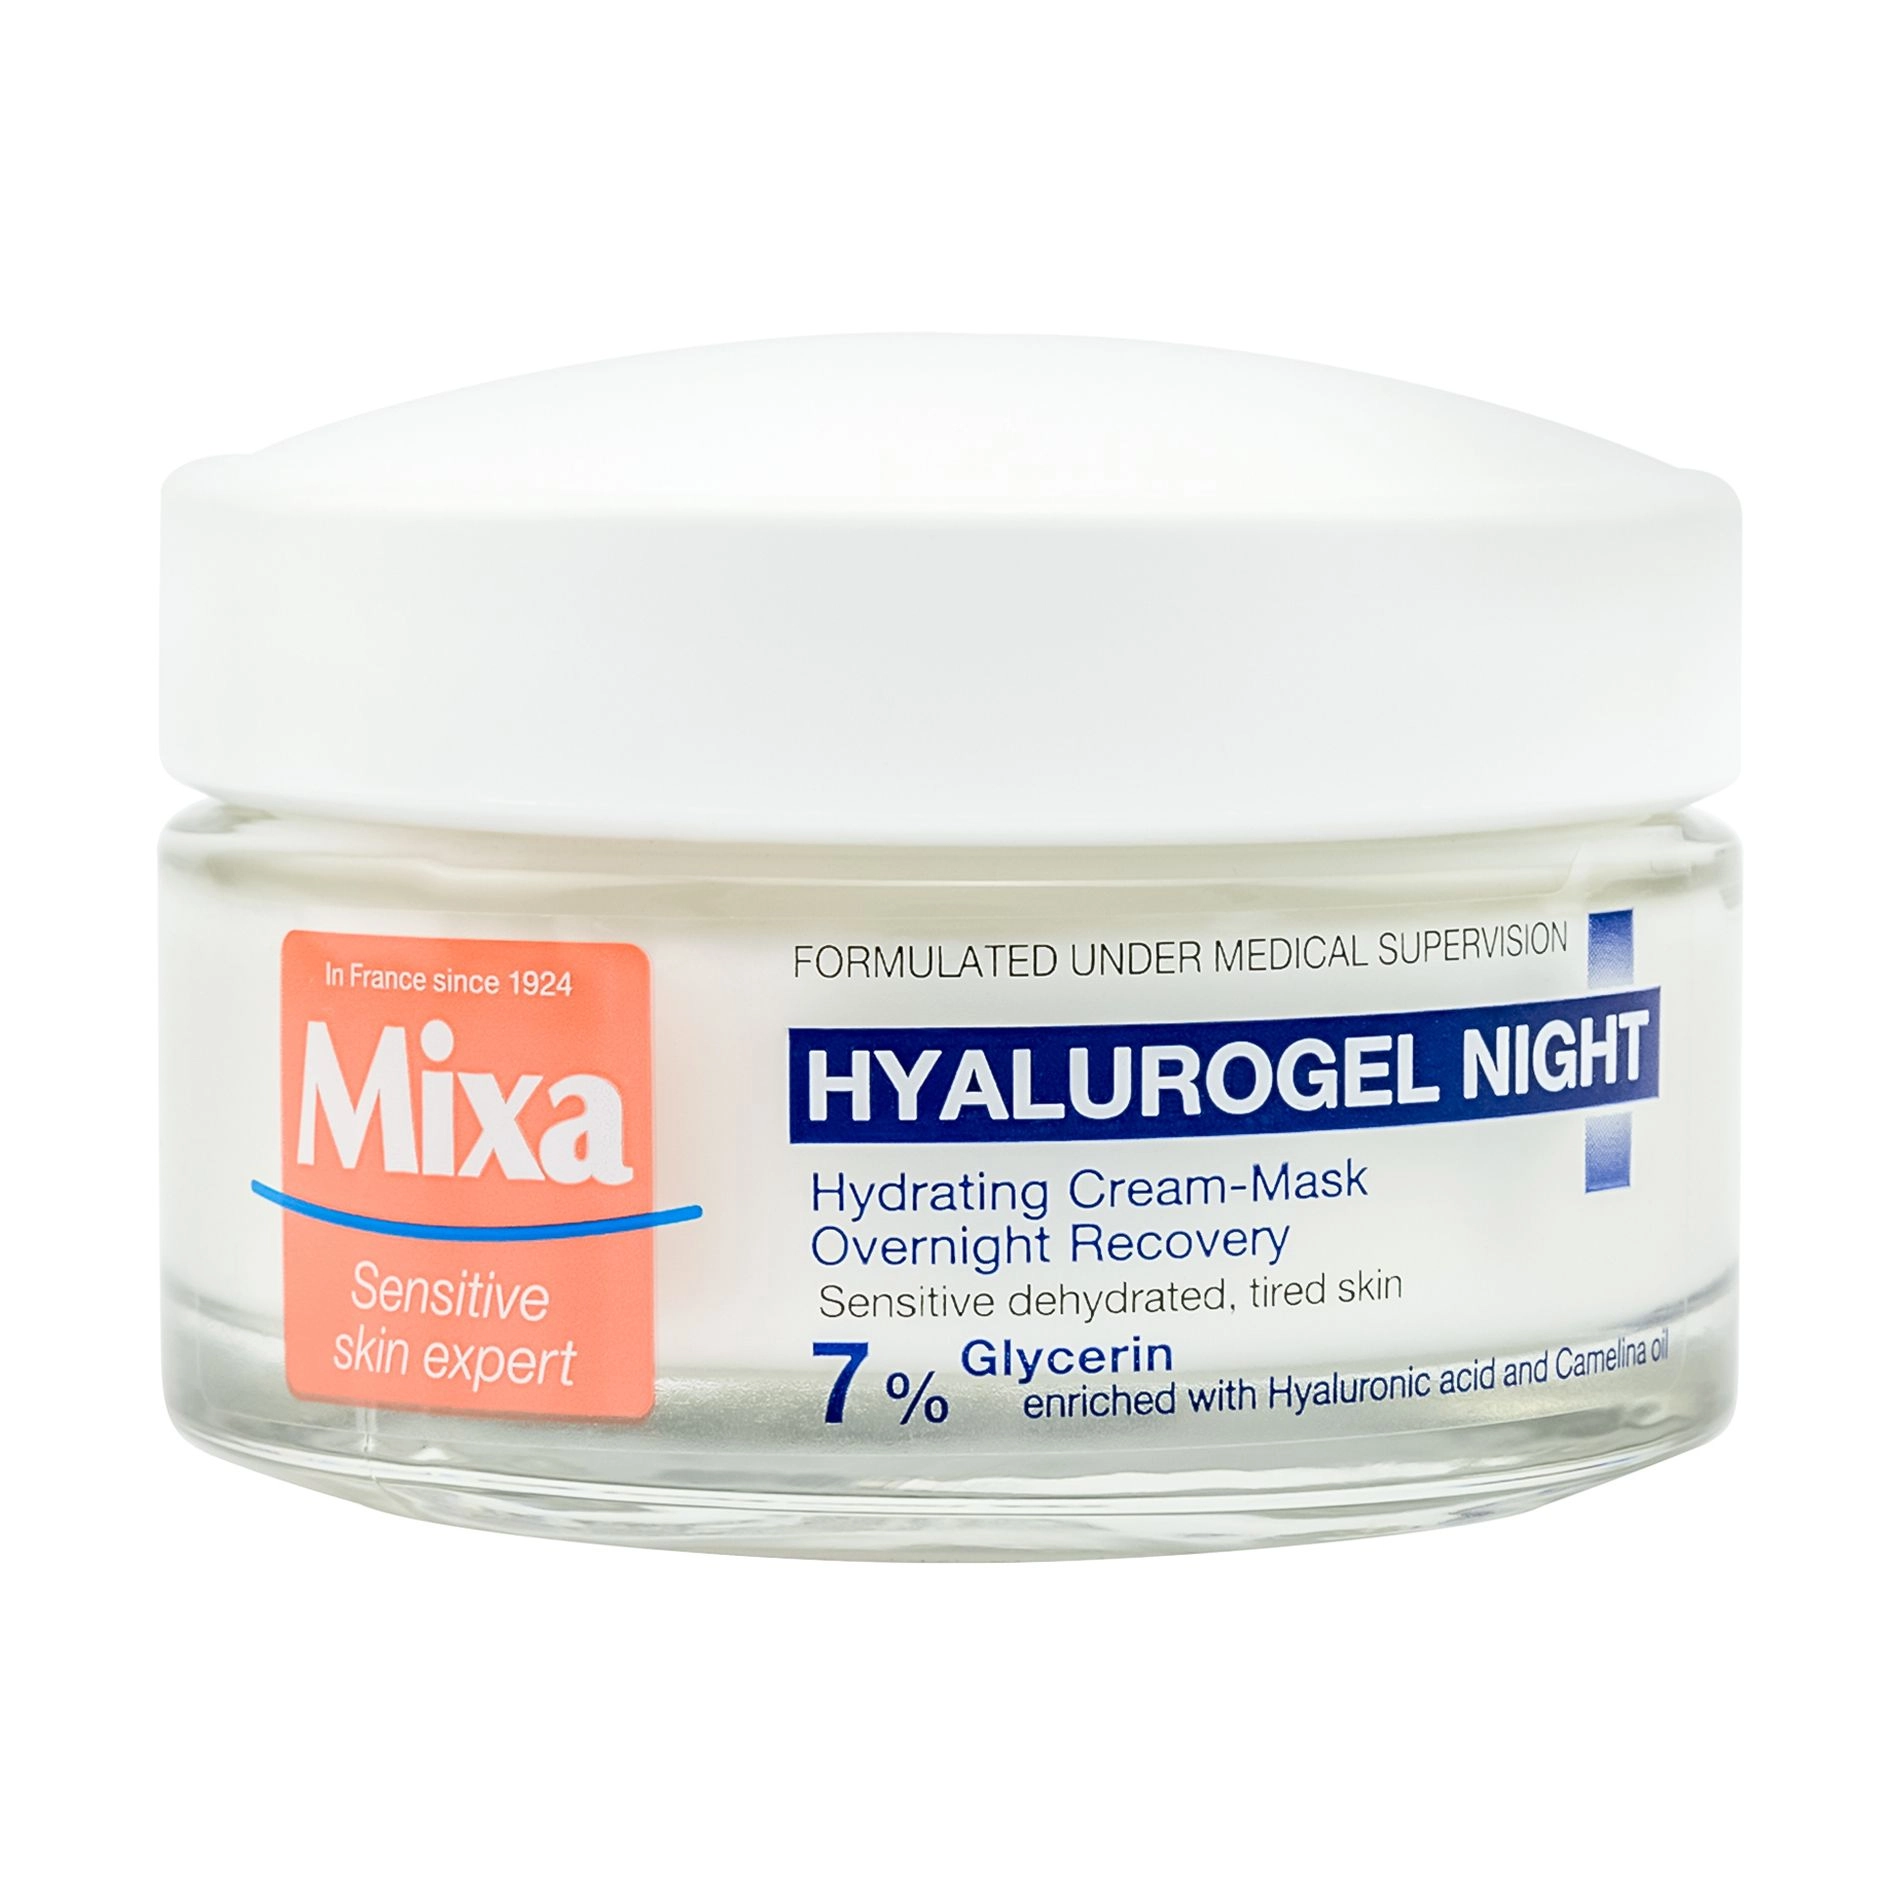 Mixa Ночной крем-маска для лица Hyalurogel Night Hydrating Cream-Mask увлажнение и восстановление чувствительной кожи, 50 мл - фото N1